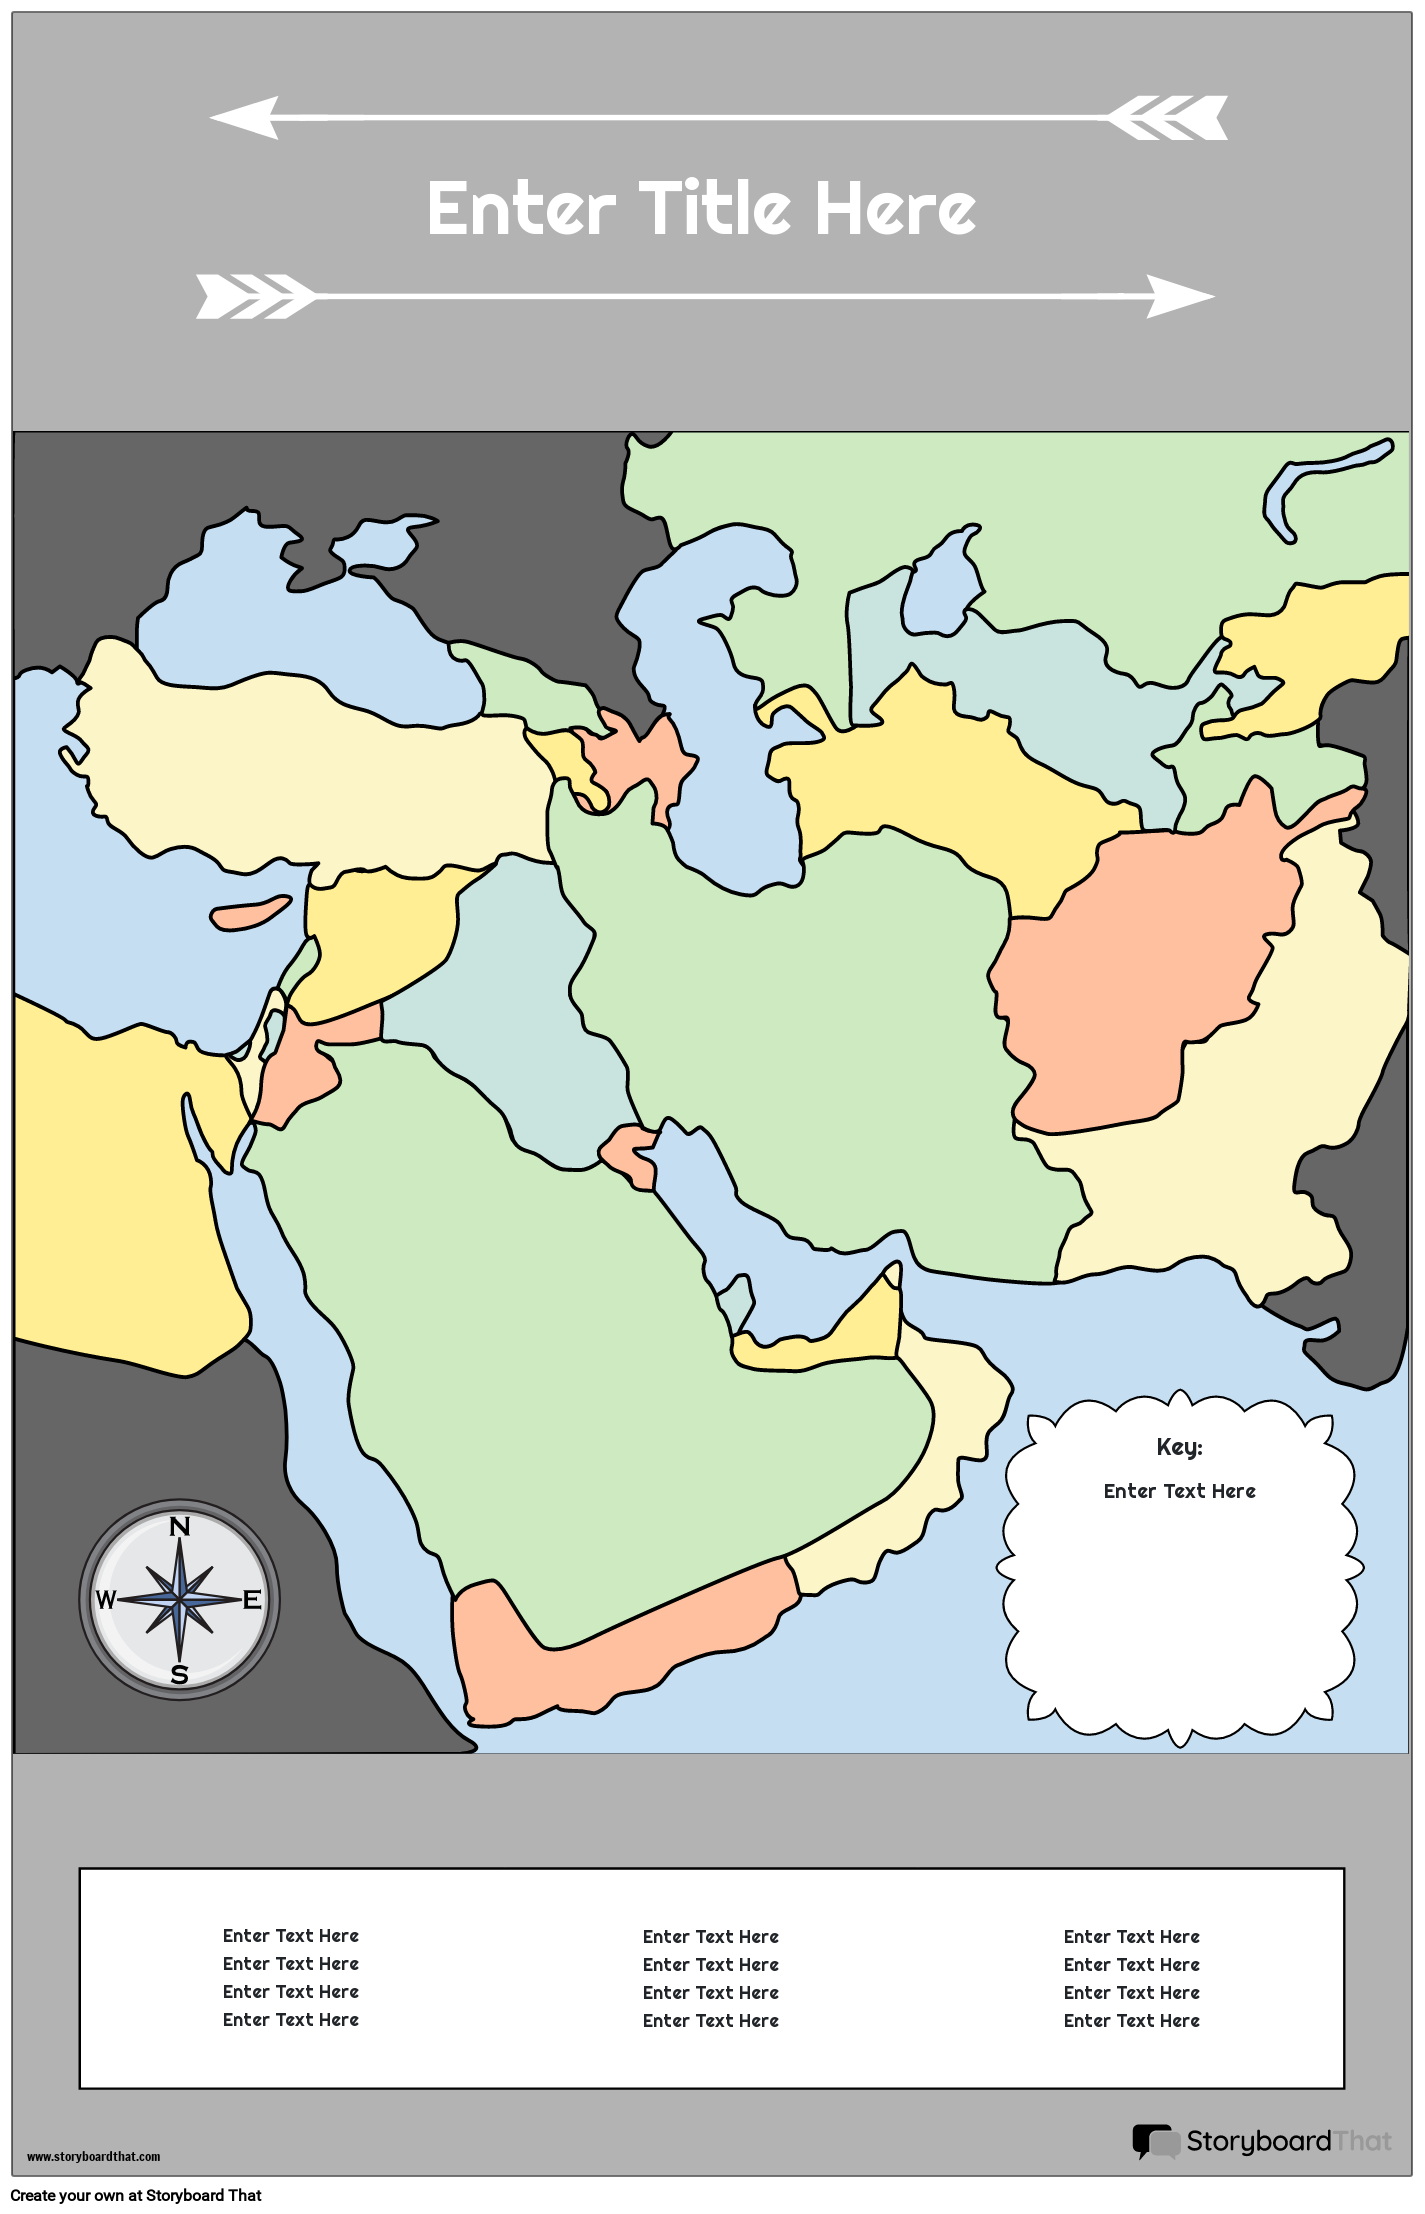 Karttajuliste 29 Värimuotokuva Lähi-itä